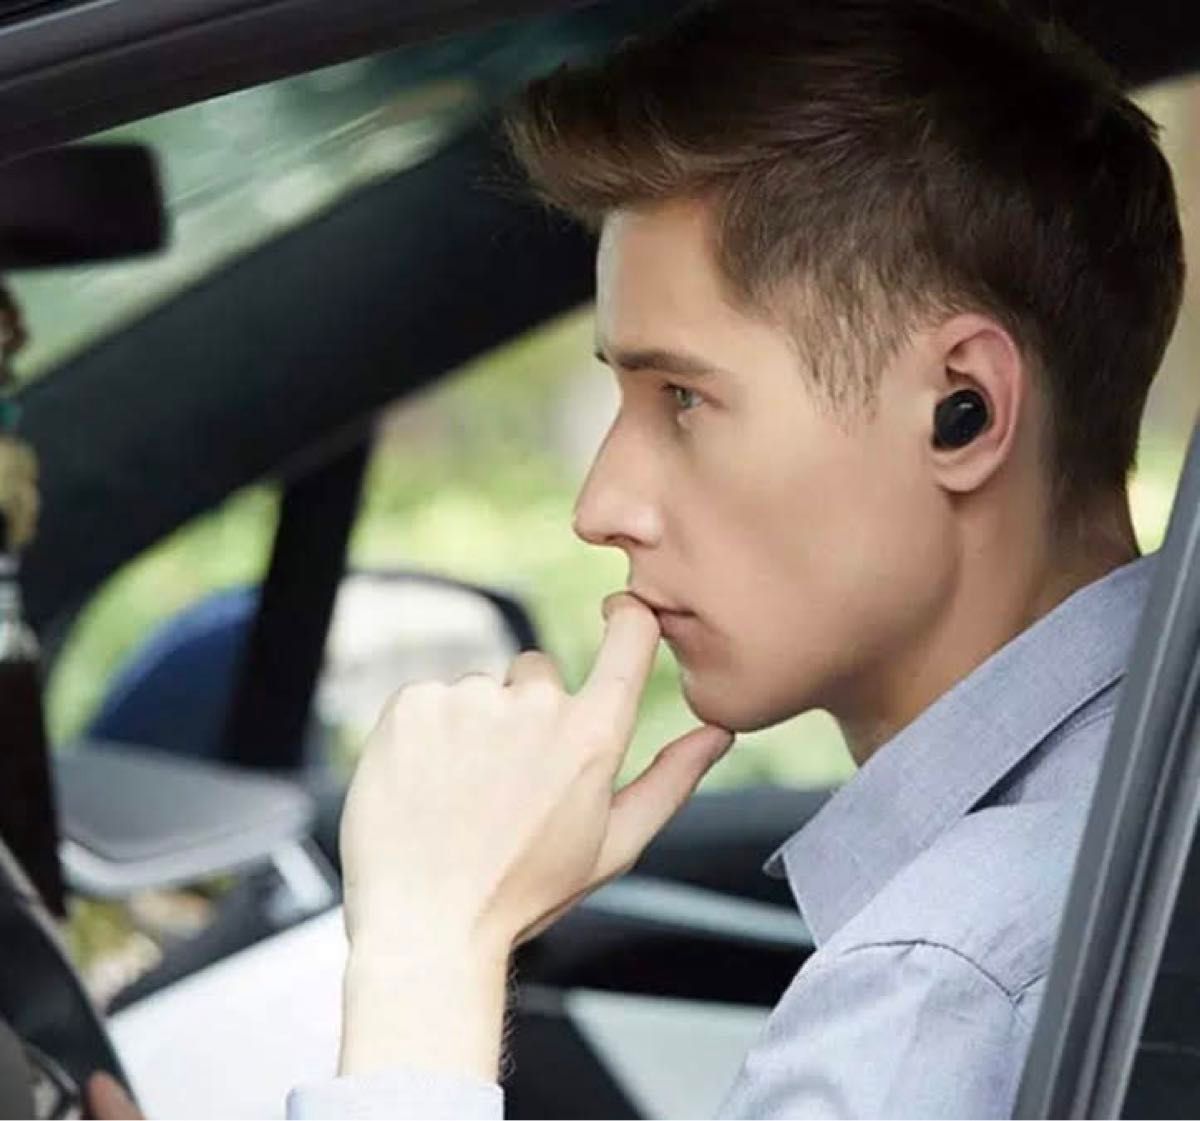 Bluetooth 5.0 ワイヤレス イヤホン 片耳タイプ